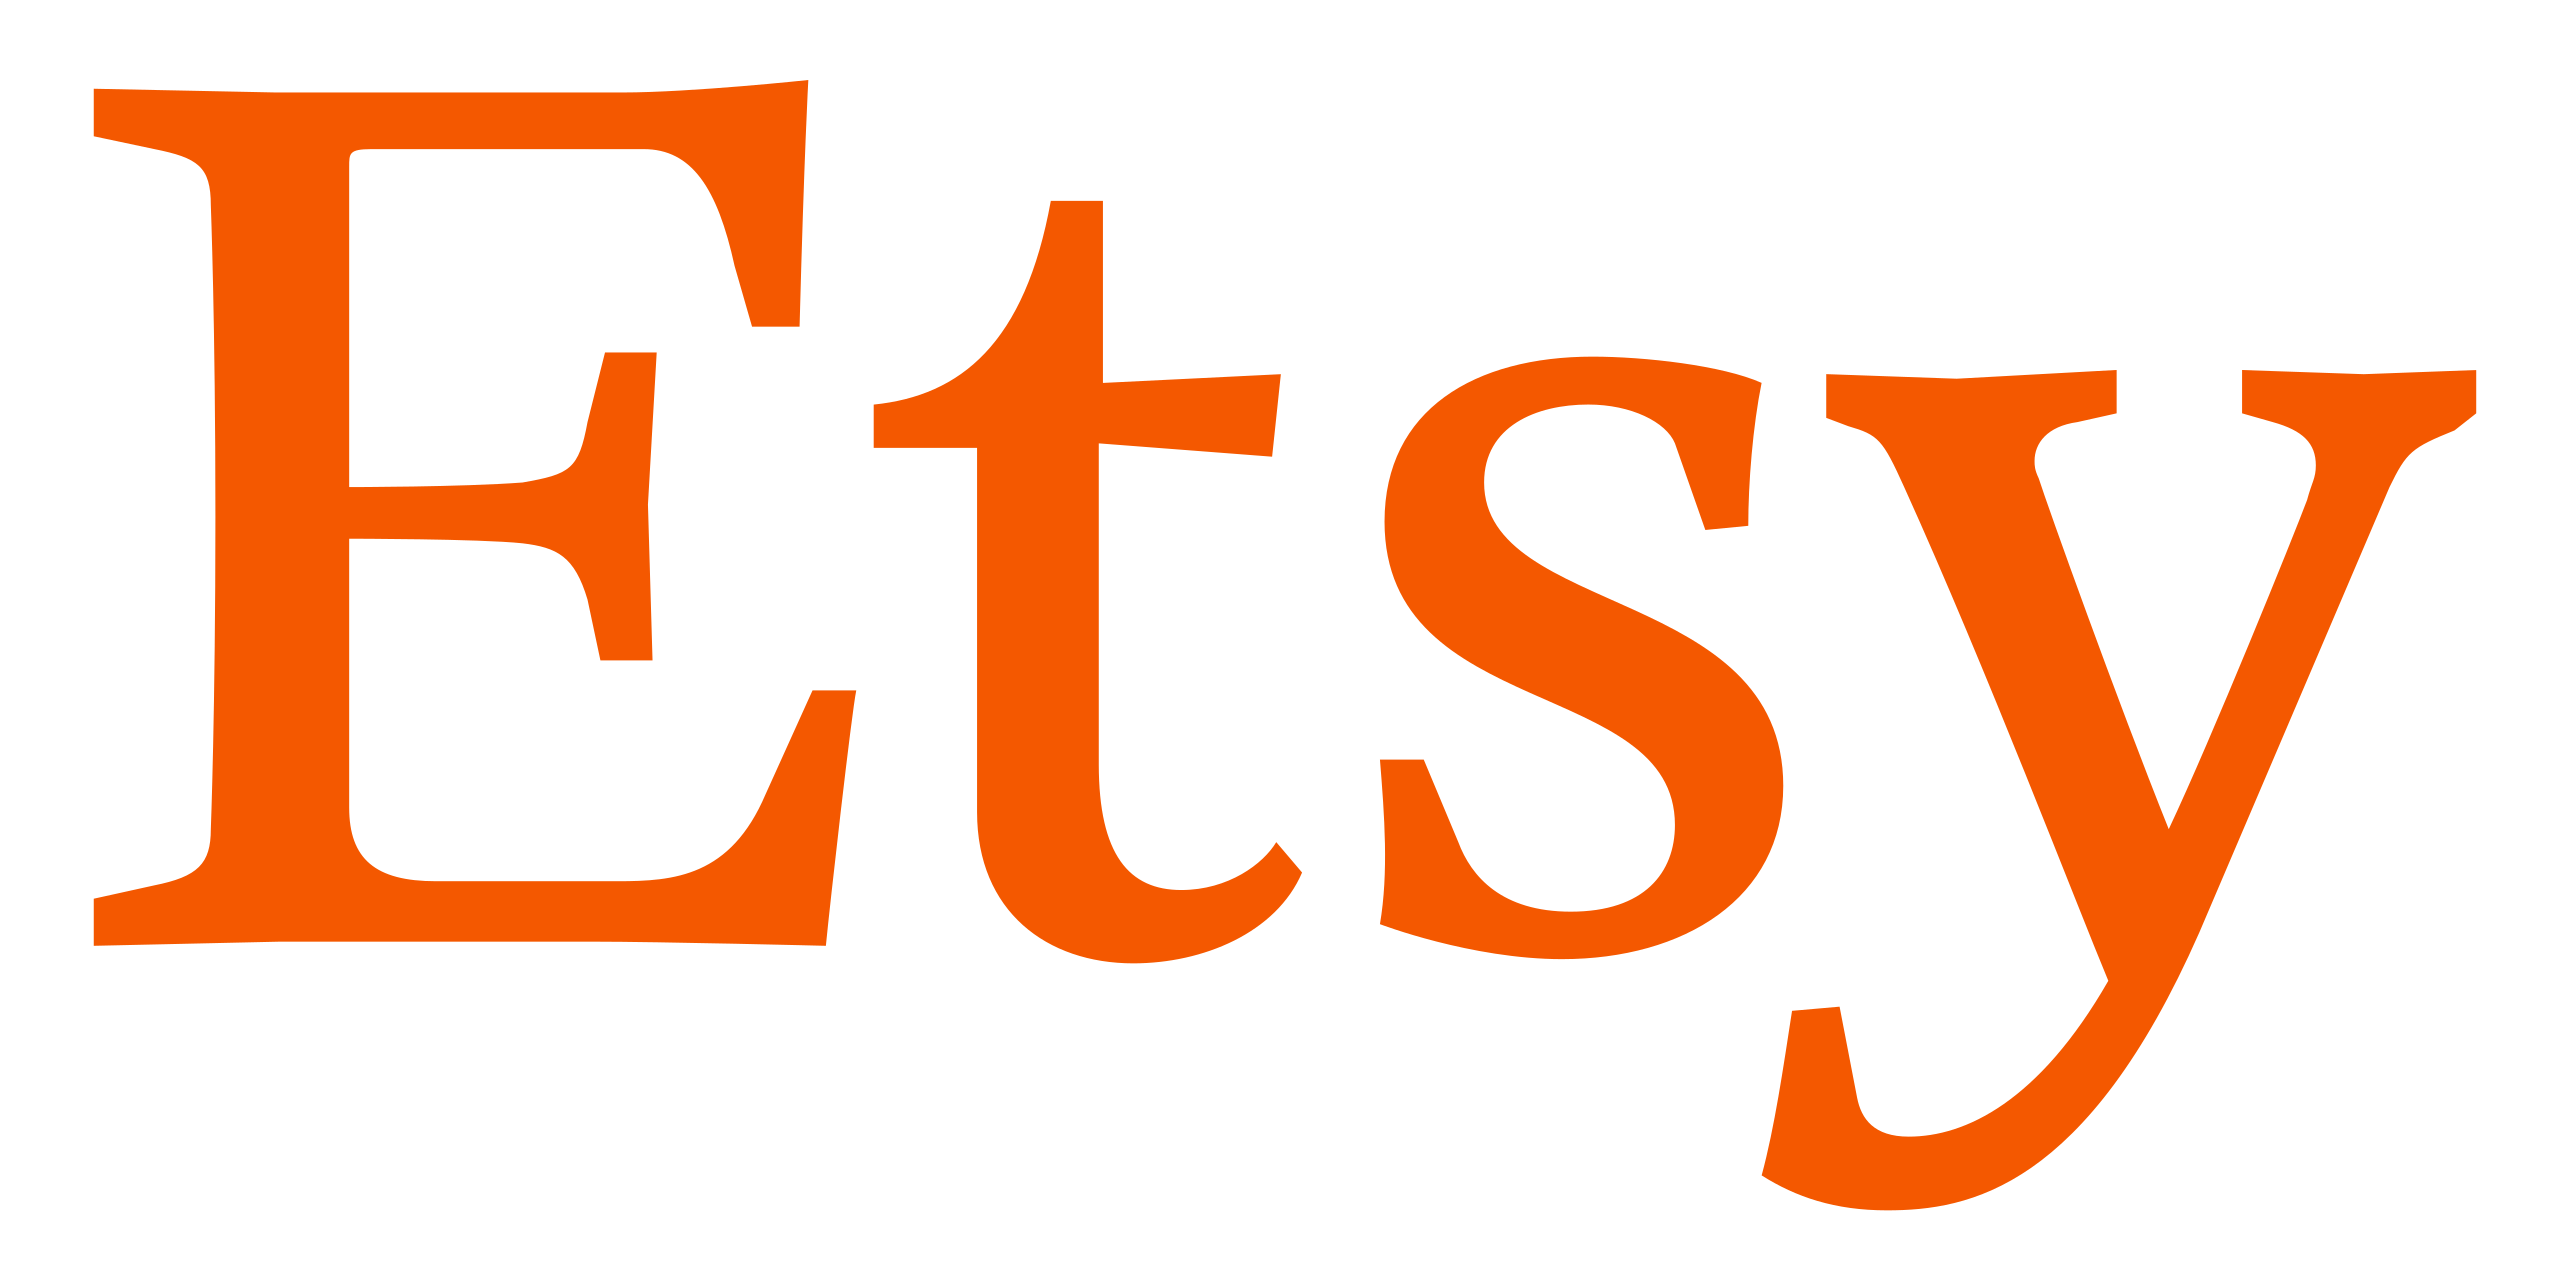 2560px-Etsy logo.svg